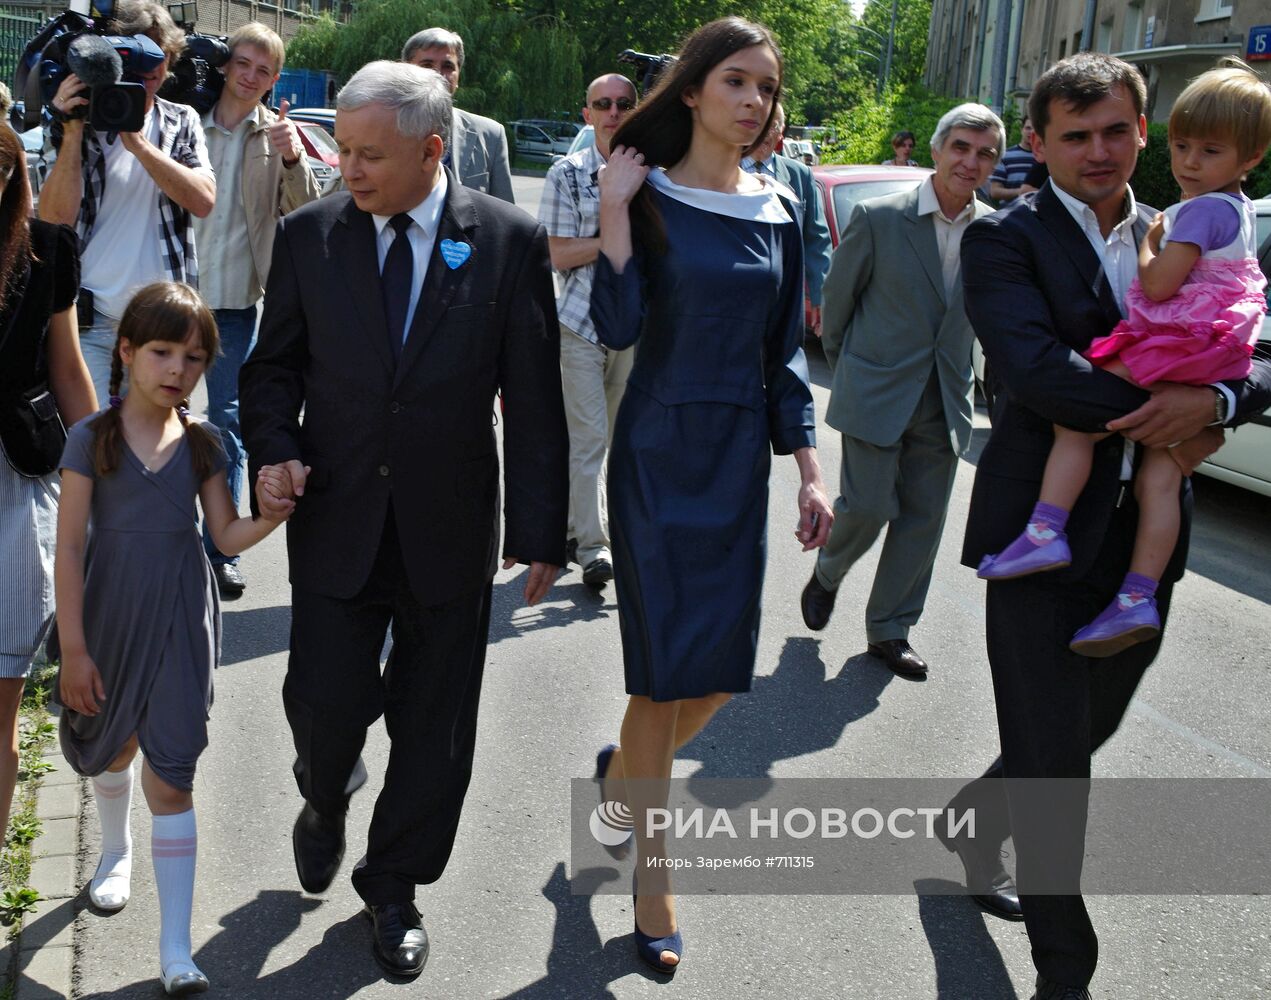 Ярослав Качиньский с семьей погибшего Леха Качиньского